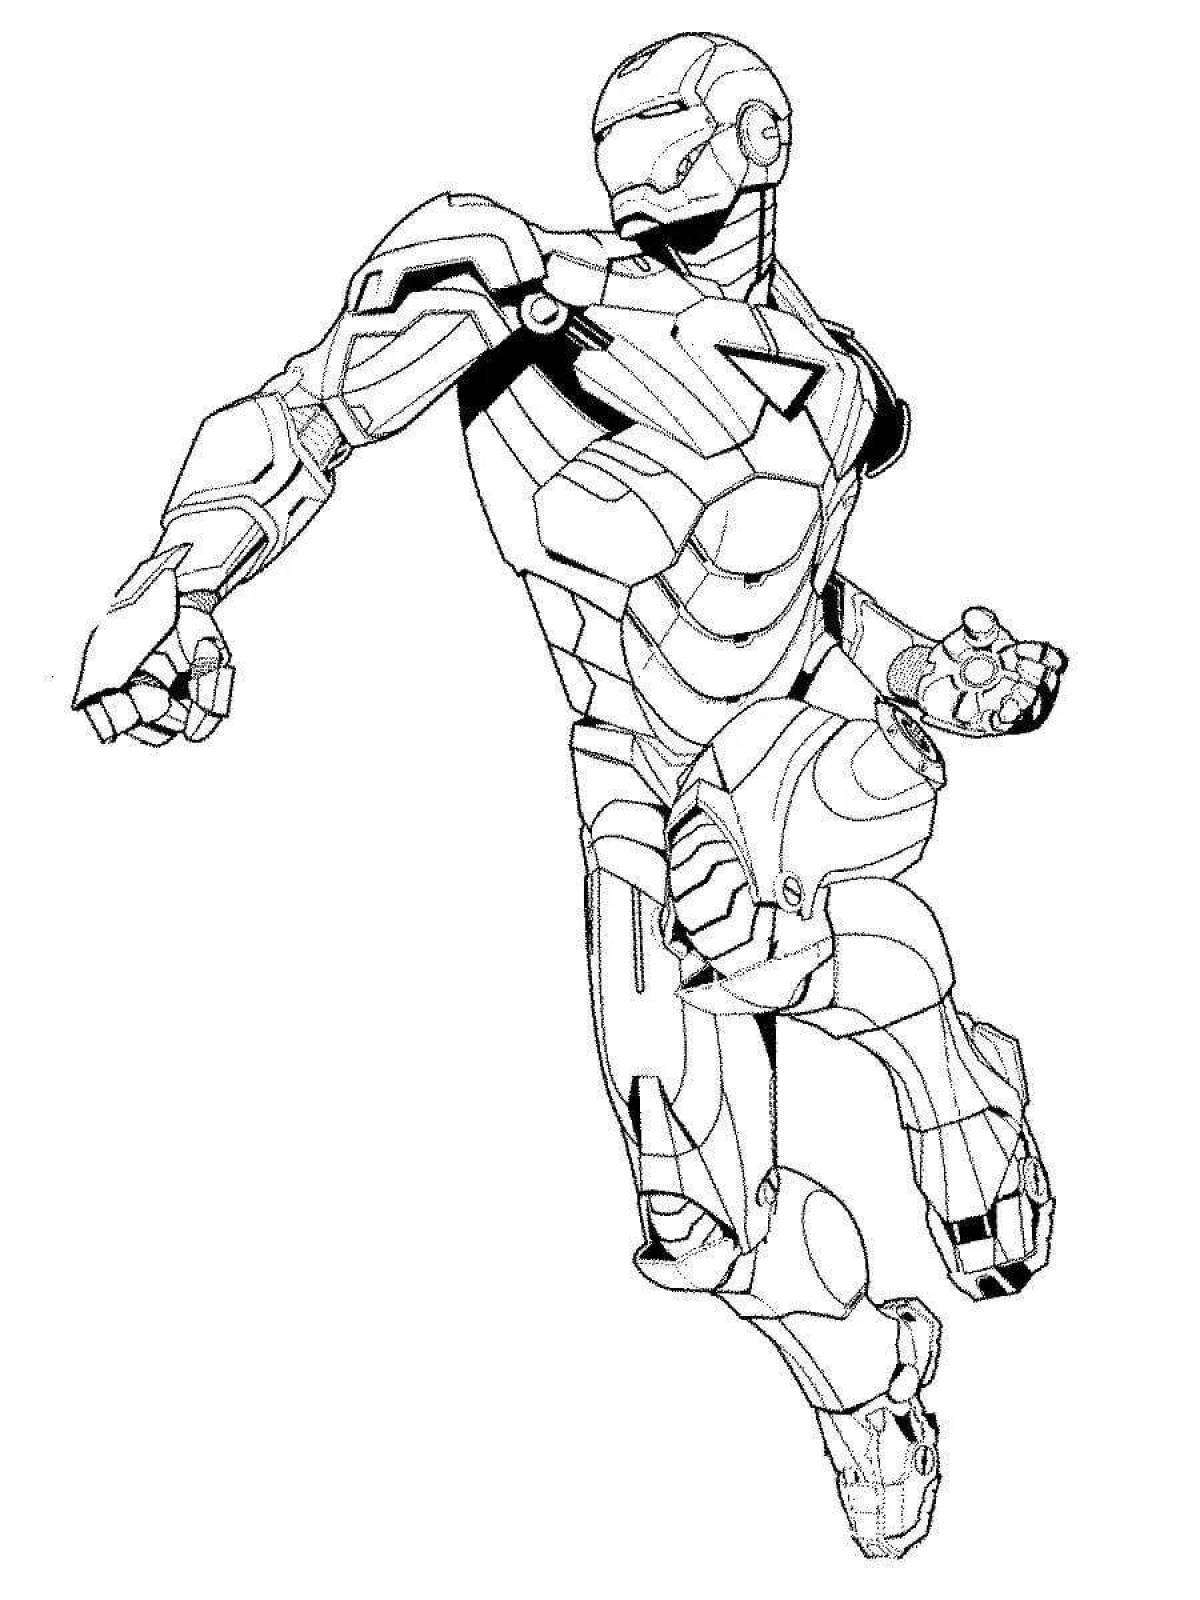 Iron man fantasy coloring book for boys